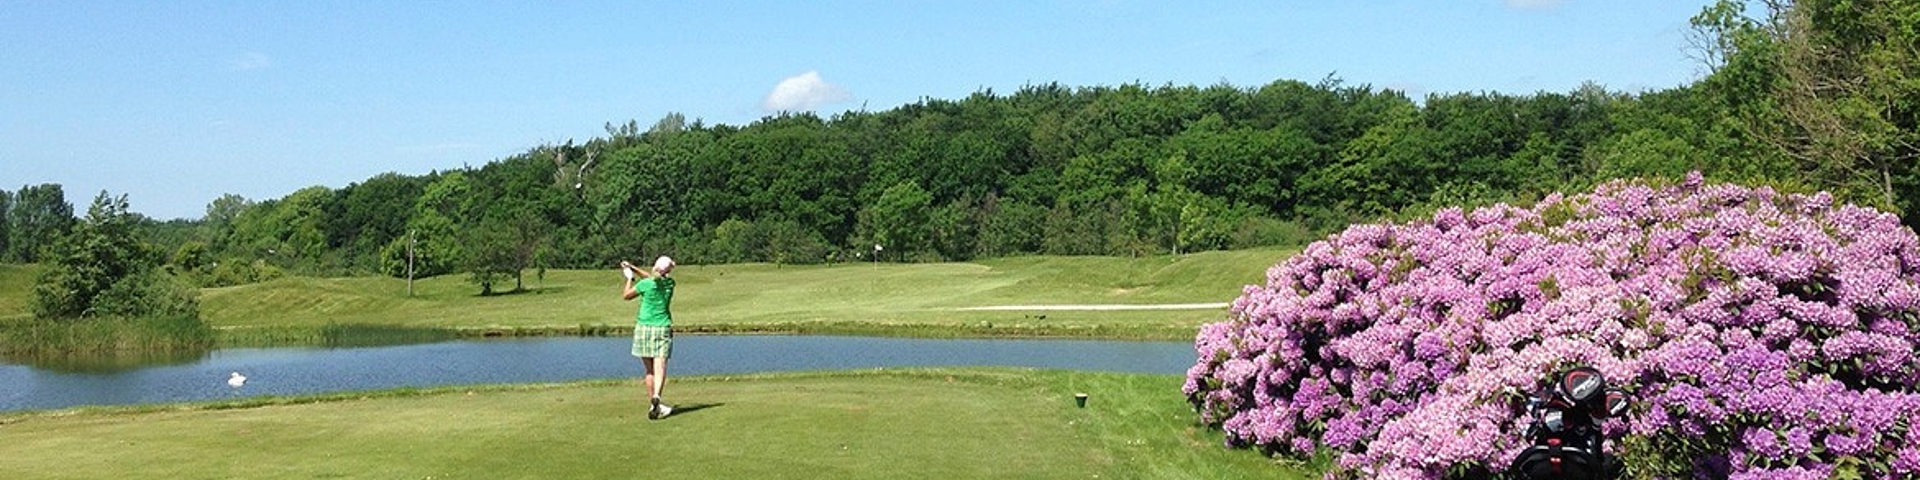 Golfklubben Golfbane Nykøbing Falster